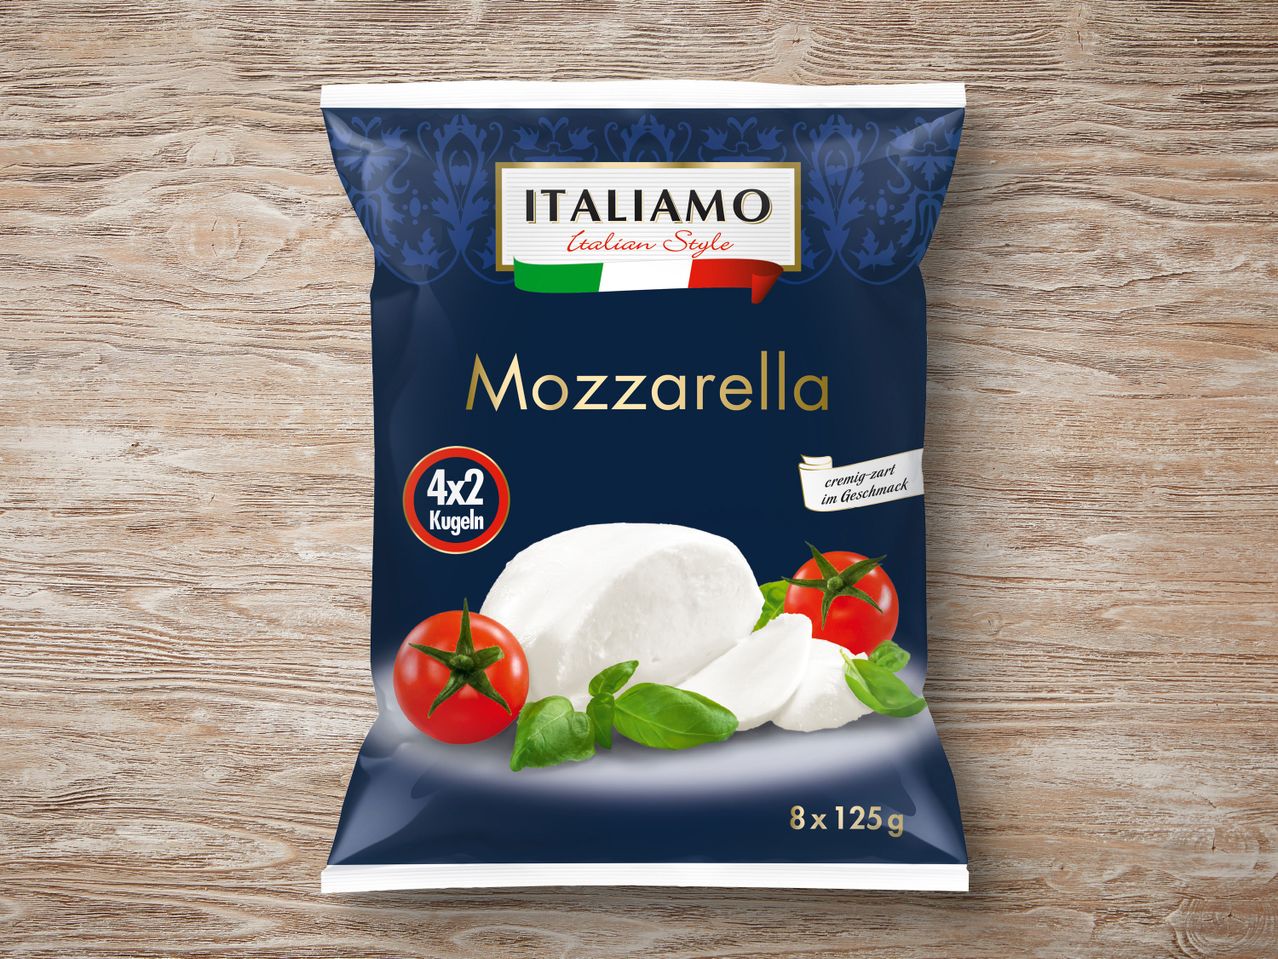 Multipack Mozzarella Italiamo